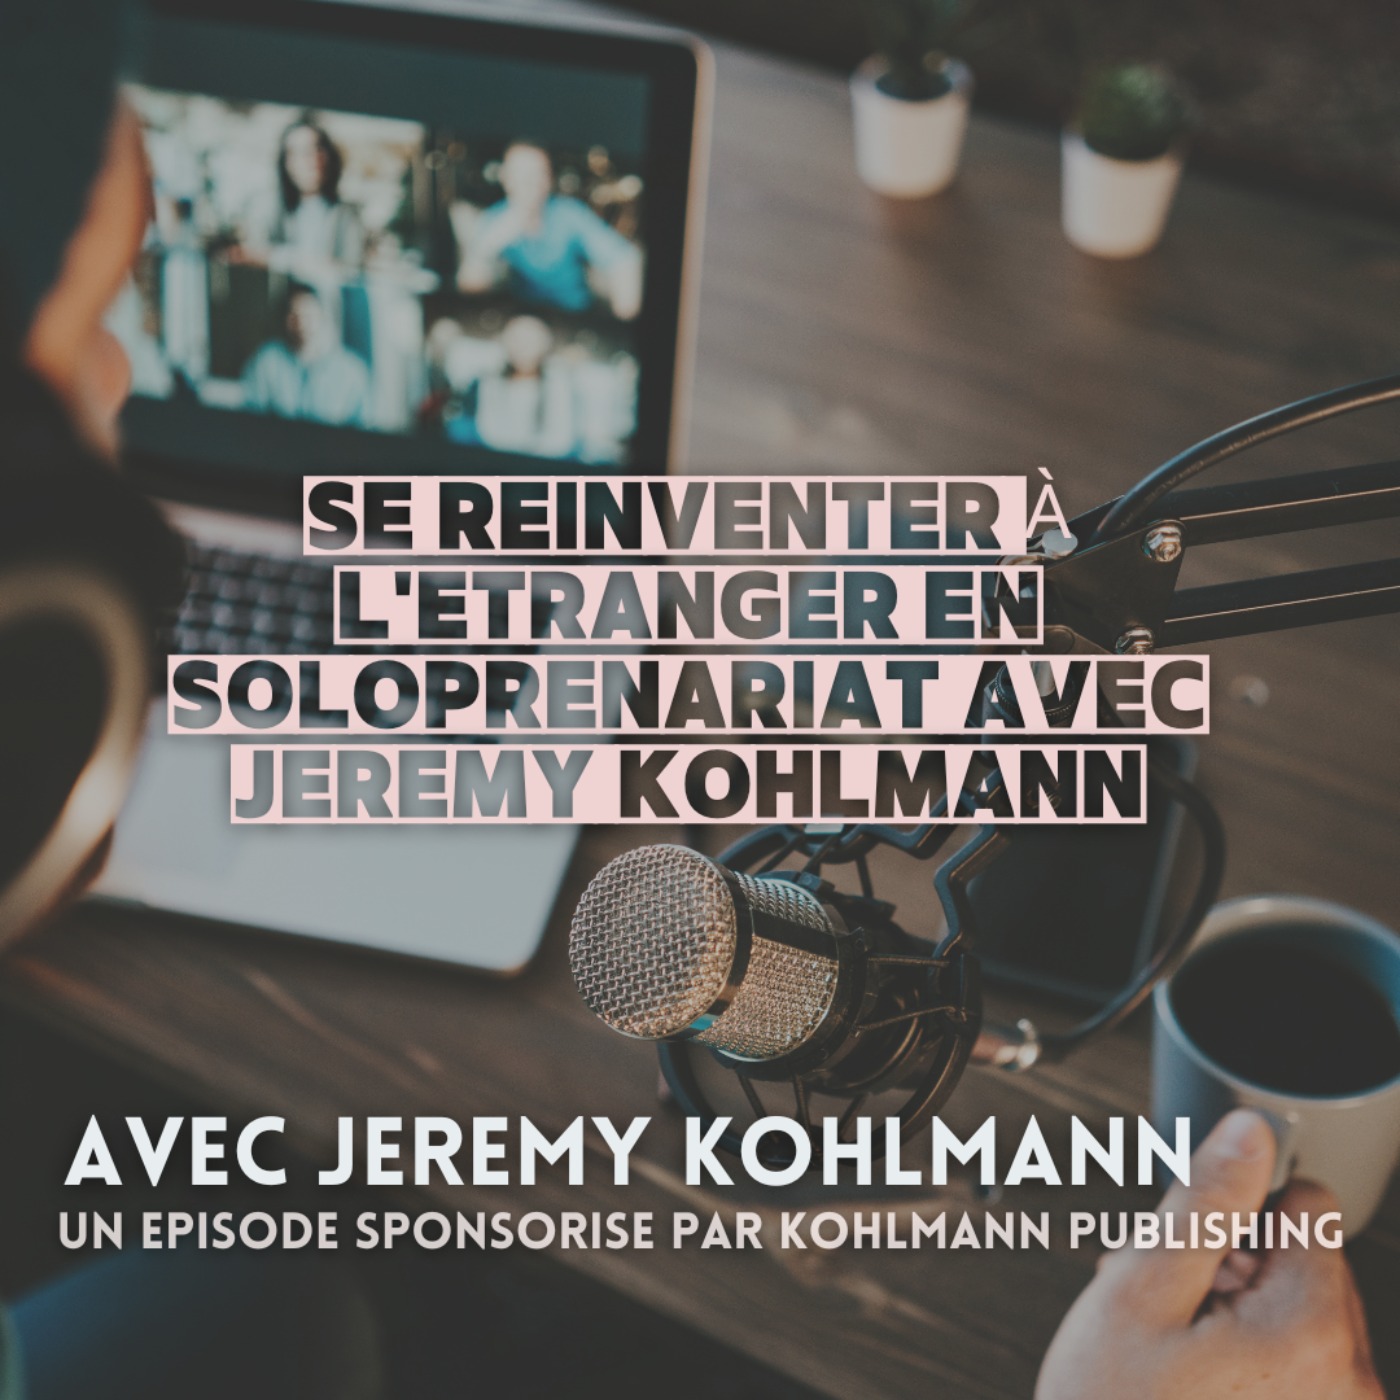 [BONUS]  Se réinventer à l'étranger en soloprenariat avec Jeremy Kohlmann